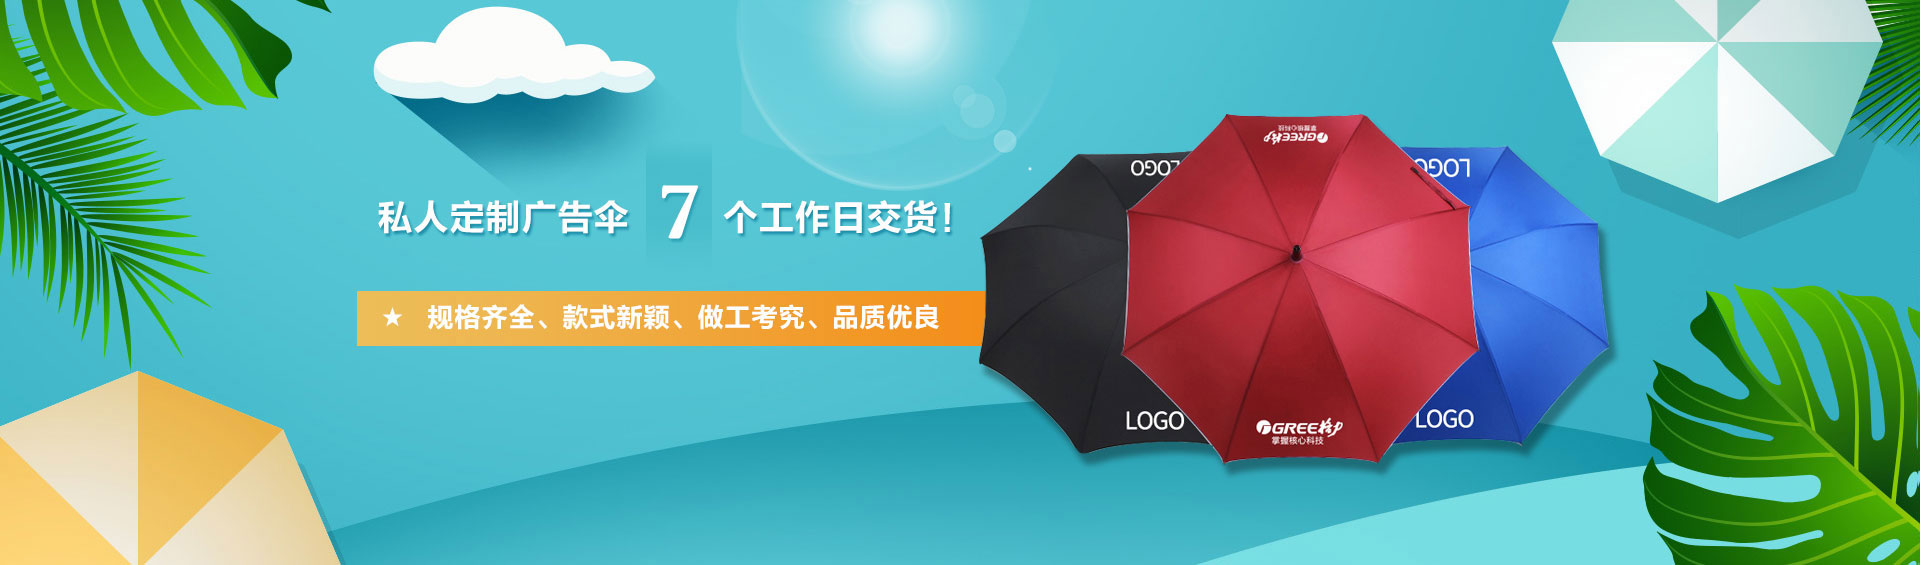 深圳市香蕉视频软件免费看伞业有限公司轮播图